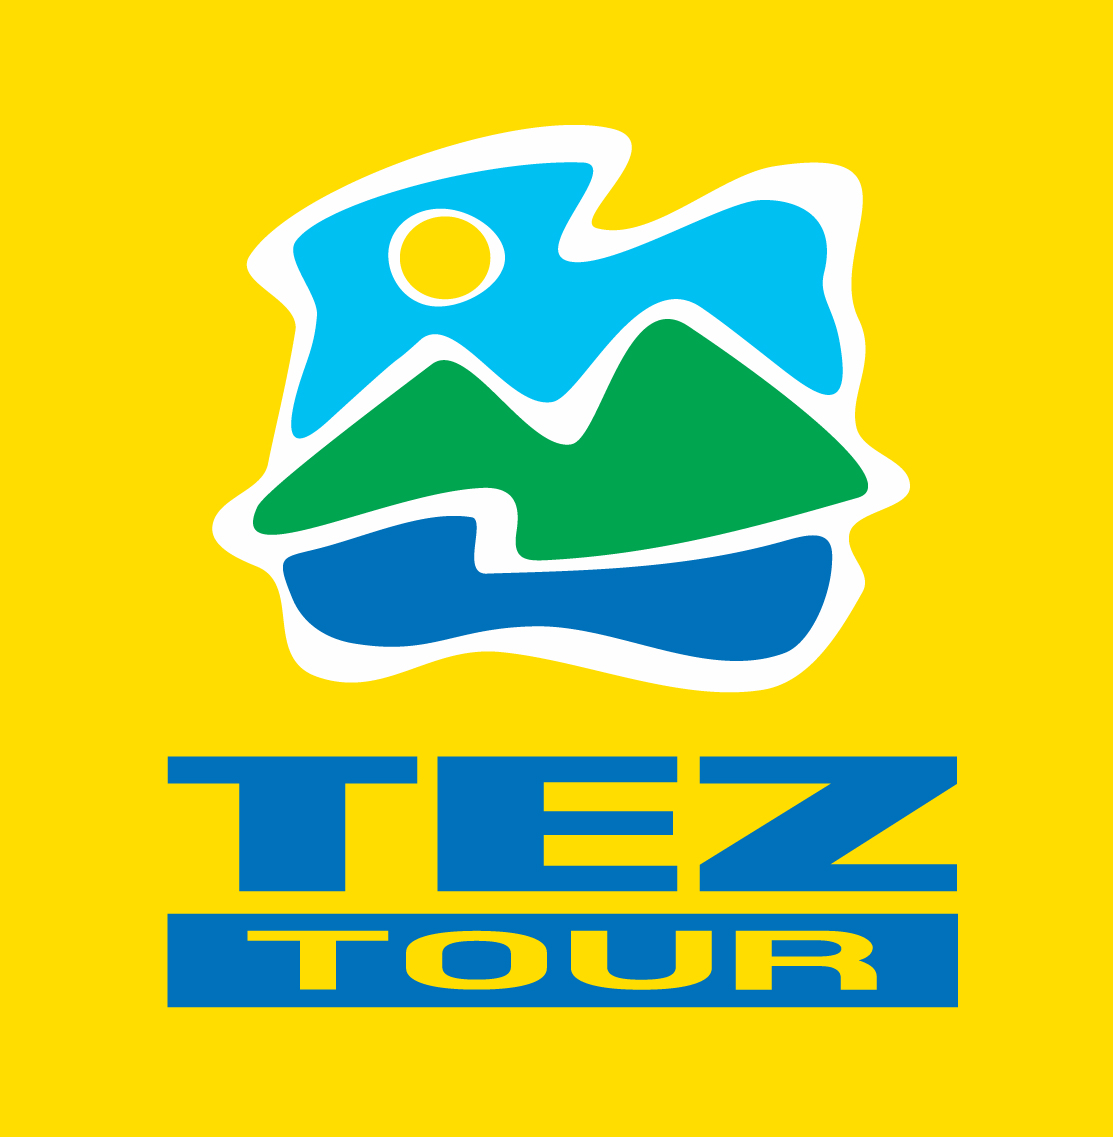 Tez tour москва. Tez Tour лого. ТЕЗ тур эмблема. Tez Tour о компании. Туристический логотип.